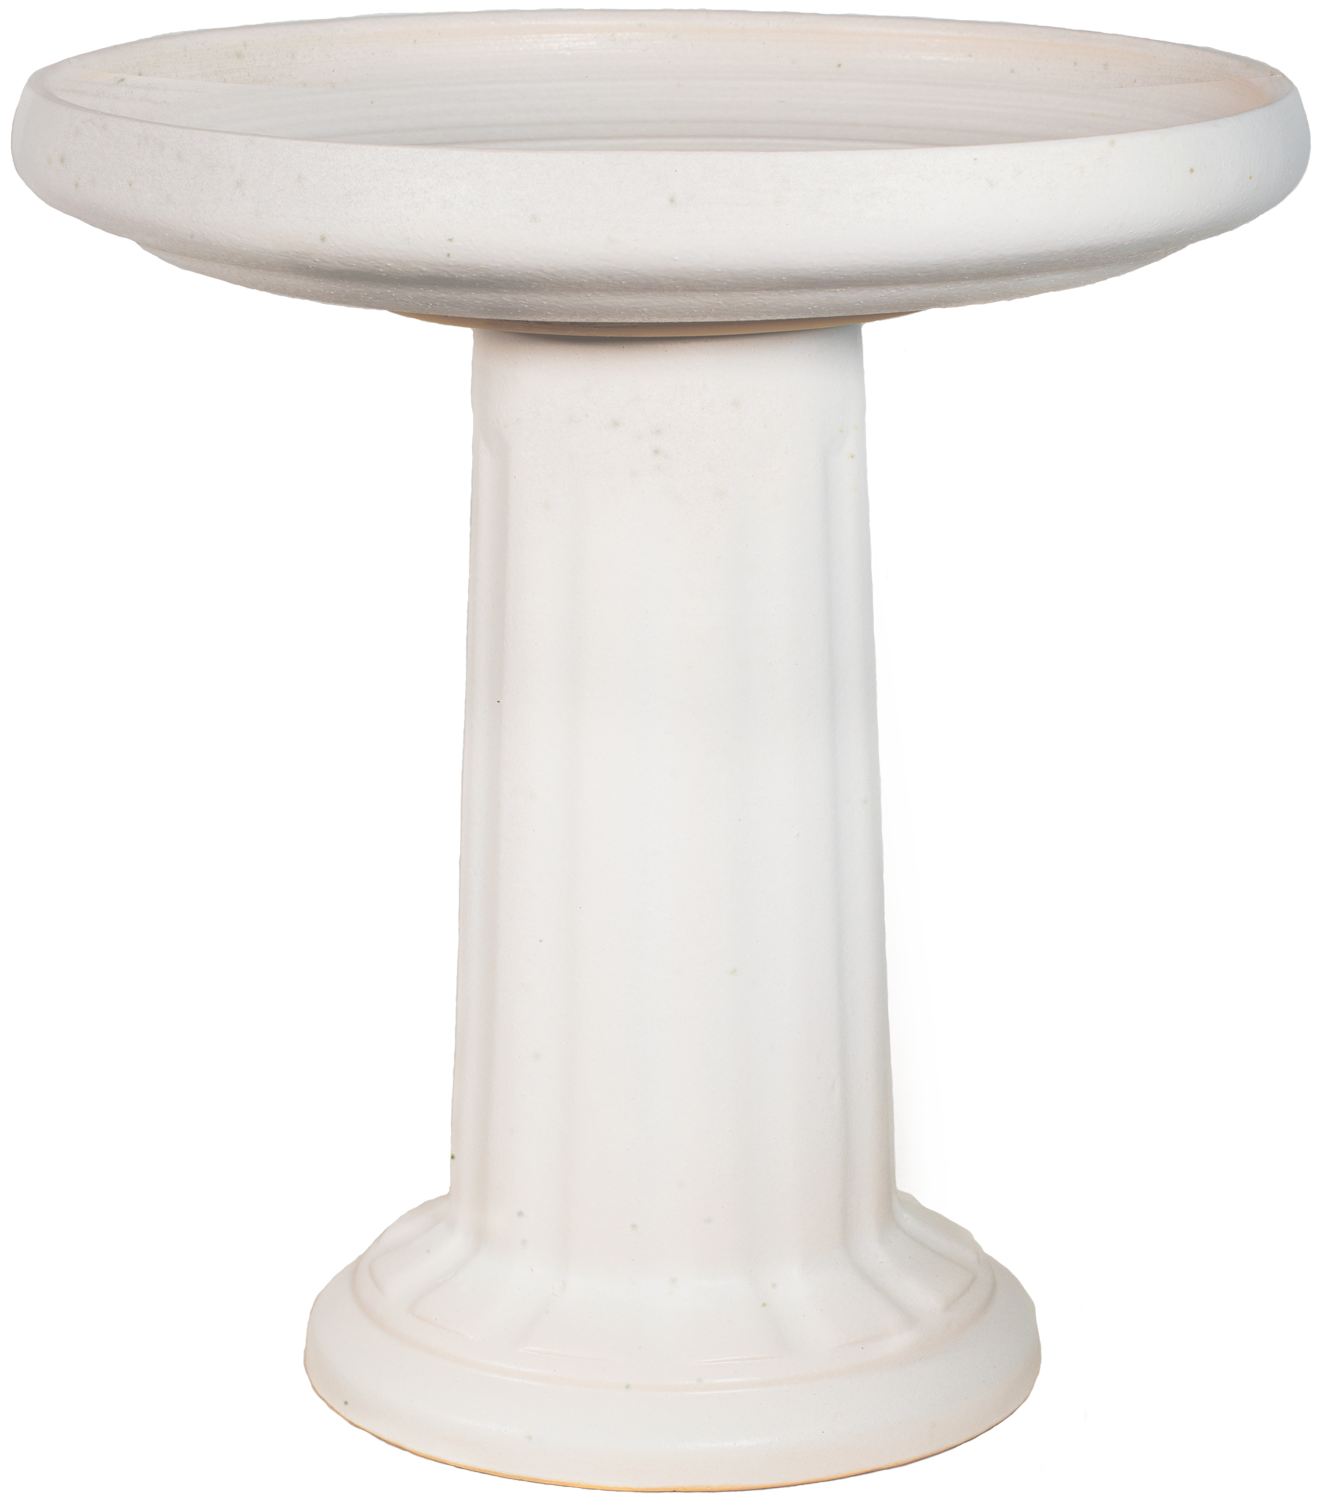 Ceramic white birdbath set with modern clean column design